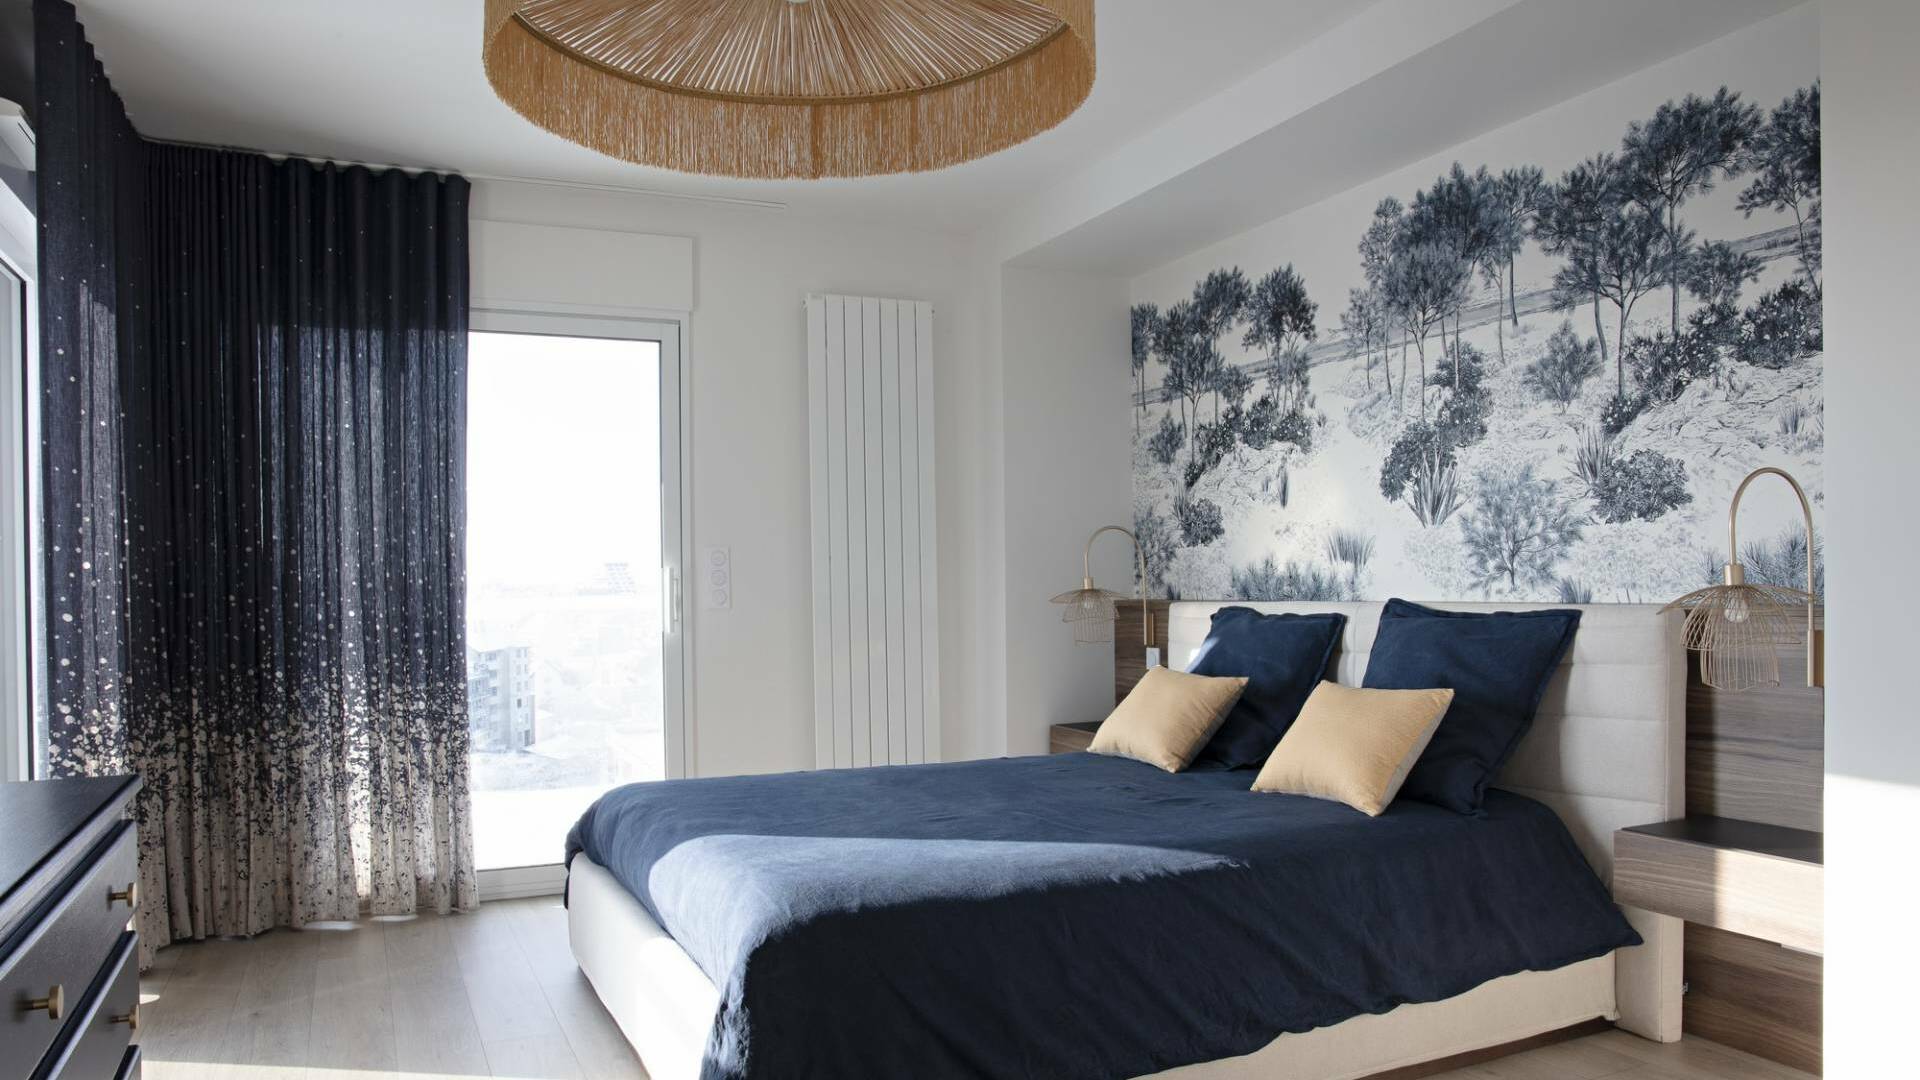 Décoration et agencement d'un appartement sur plans à Rennes - chambre parentale bleu marine avec panoramique Dune bleu d'Isidore Leroy en tête de lit